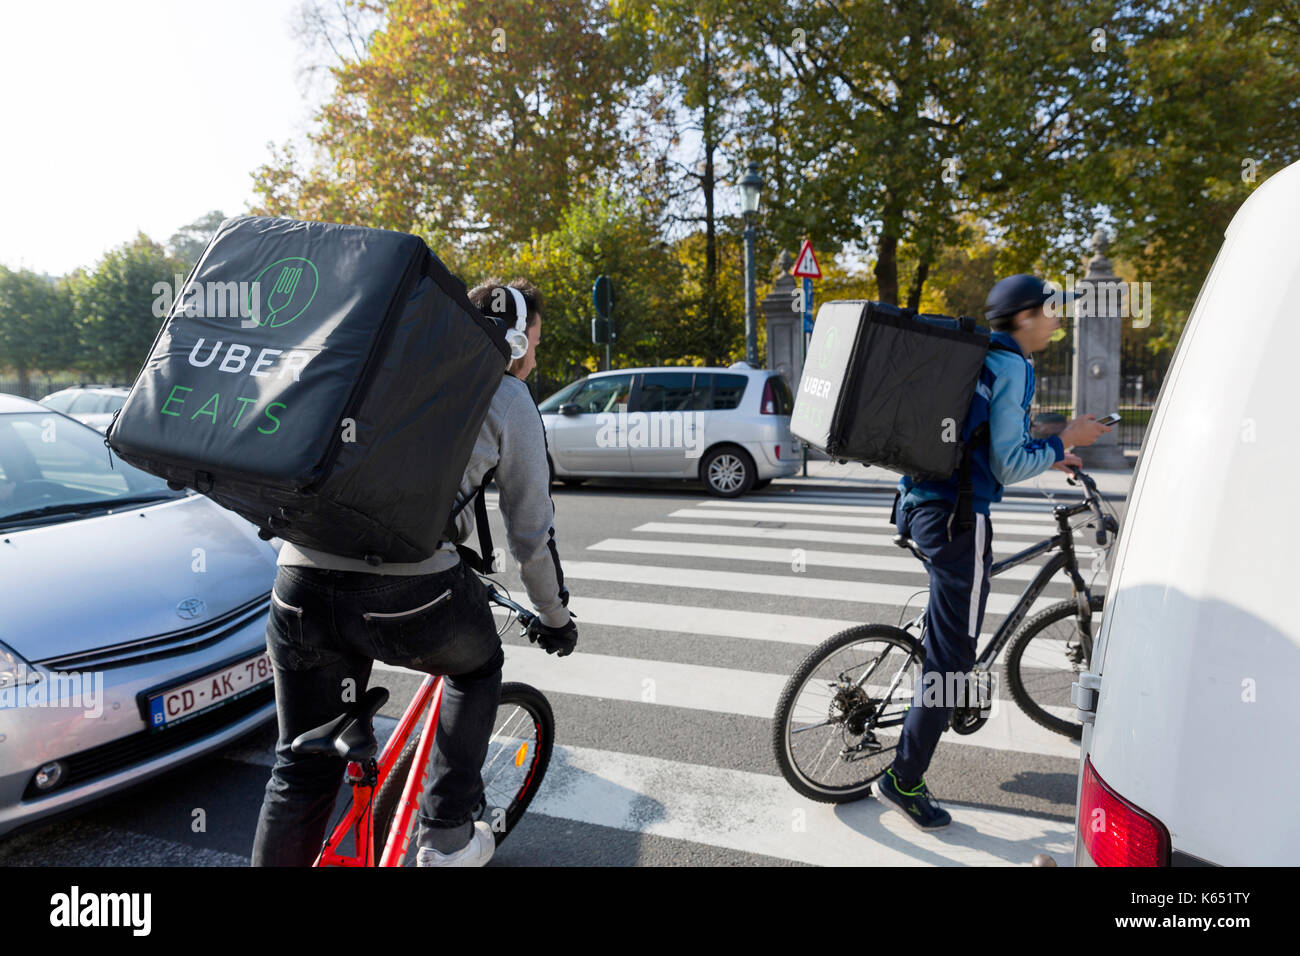 Bélgica, Bruselas: UberEATS comida online, plataforma de pedidos y entrega, courier andar en bicicleta Foto de stock